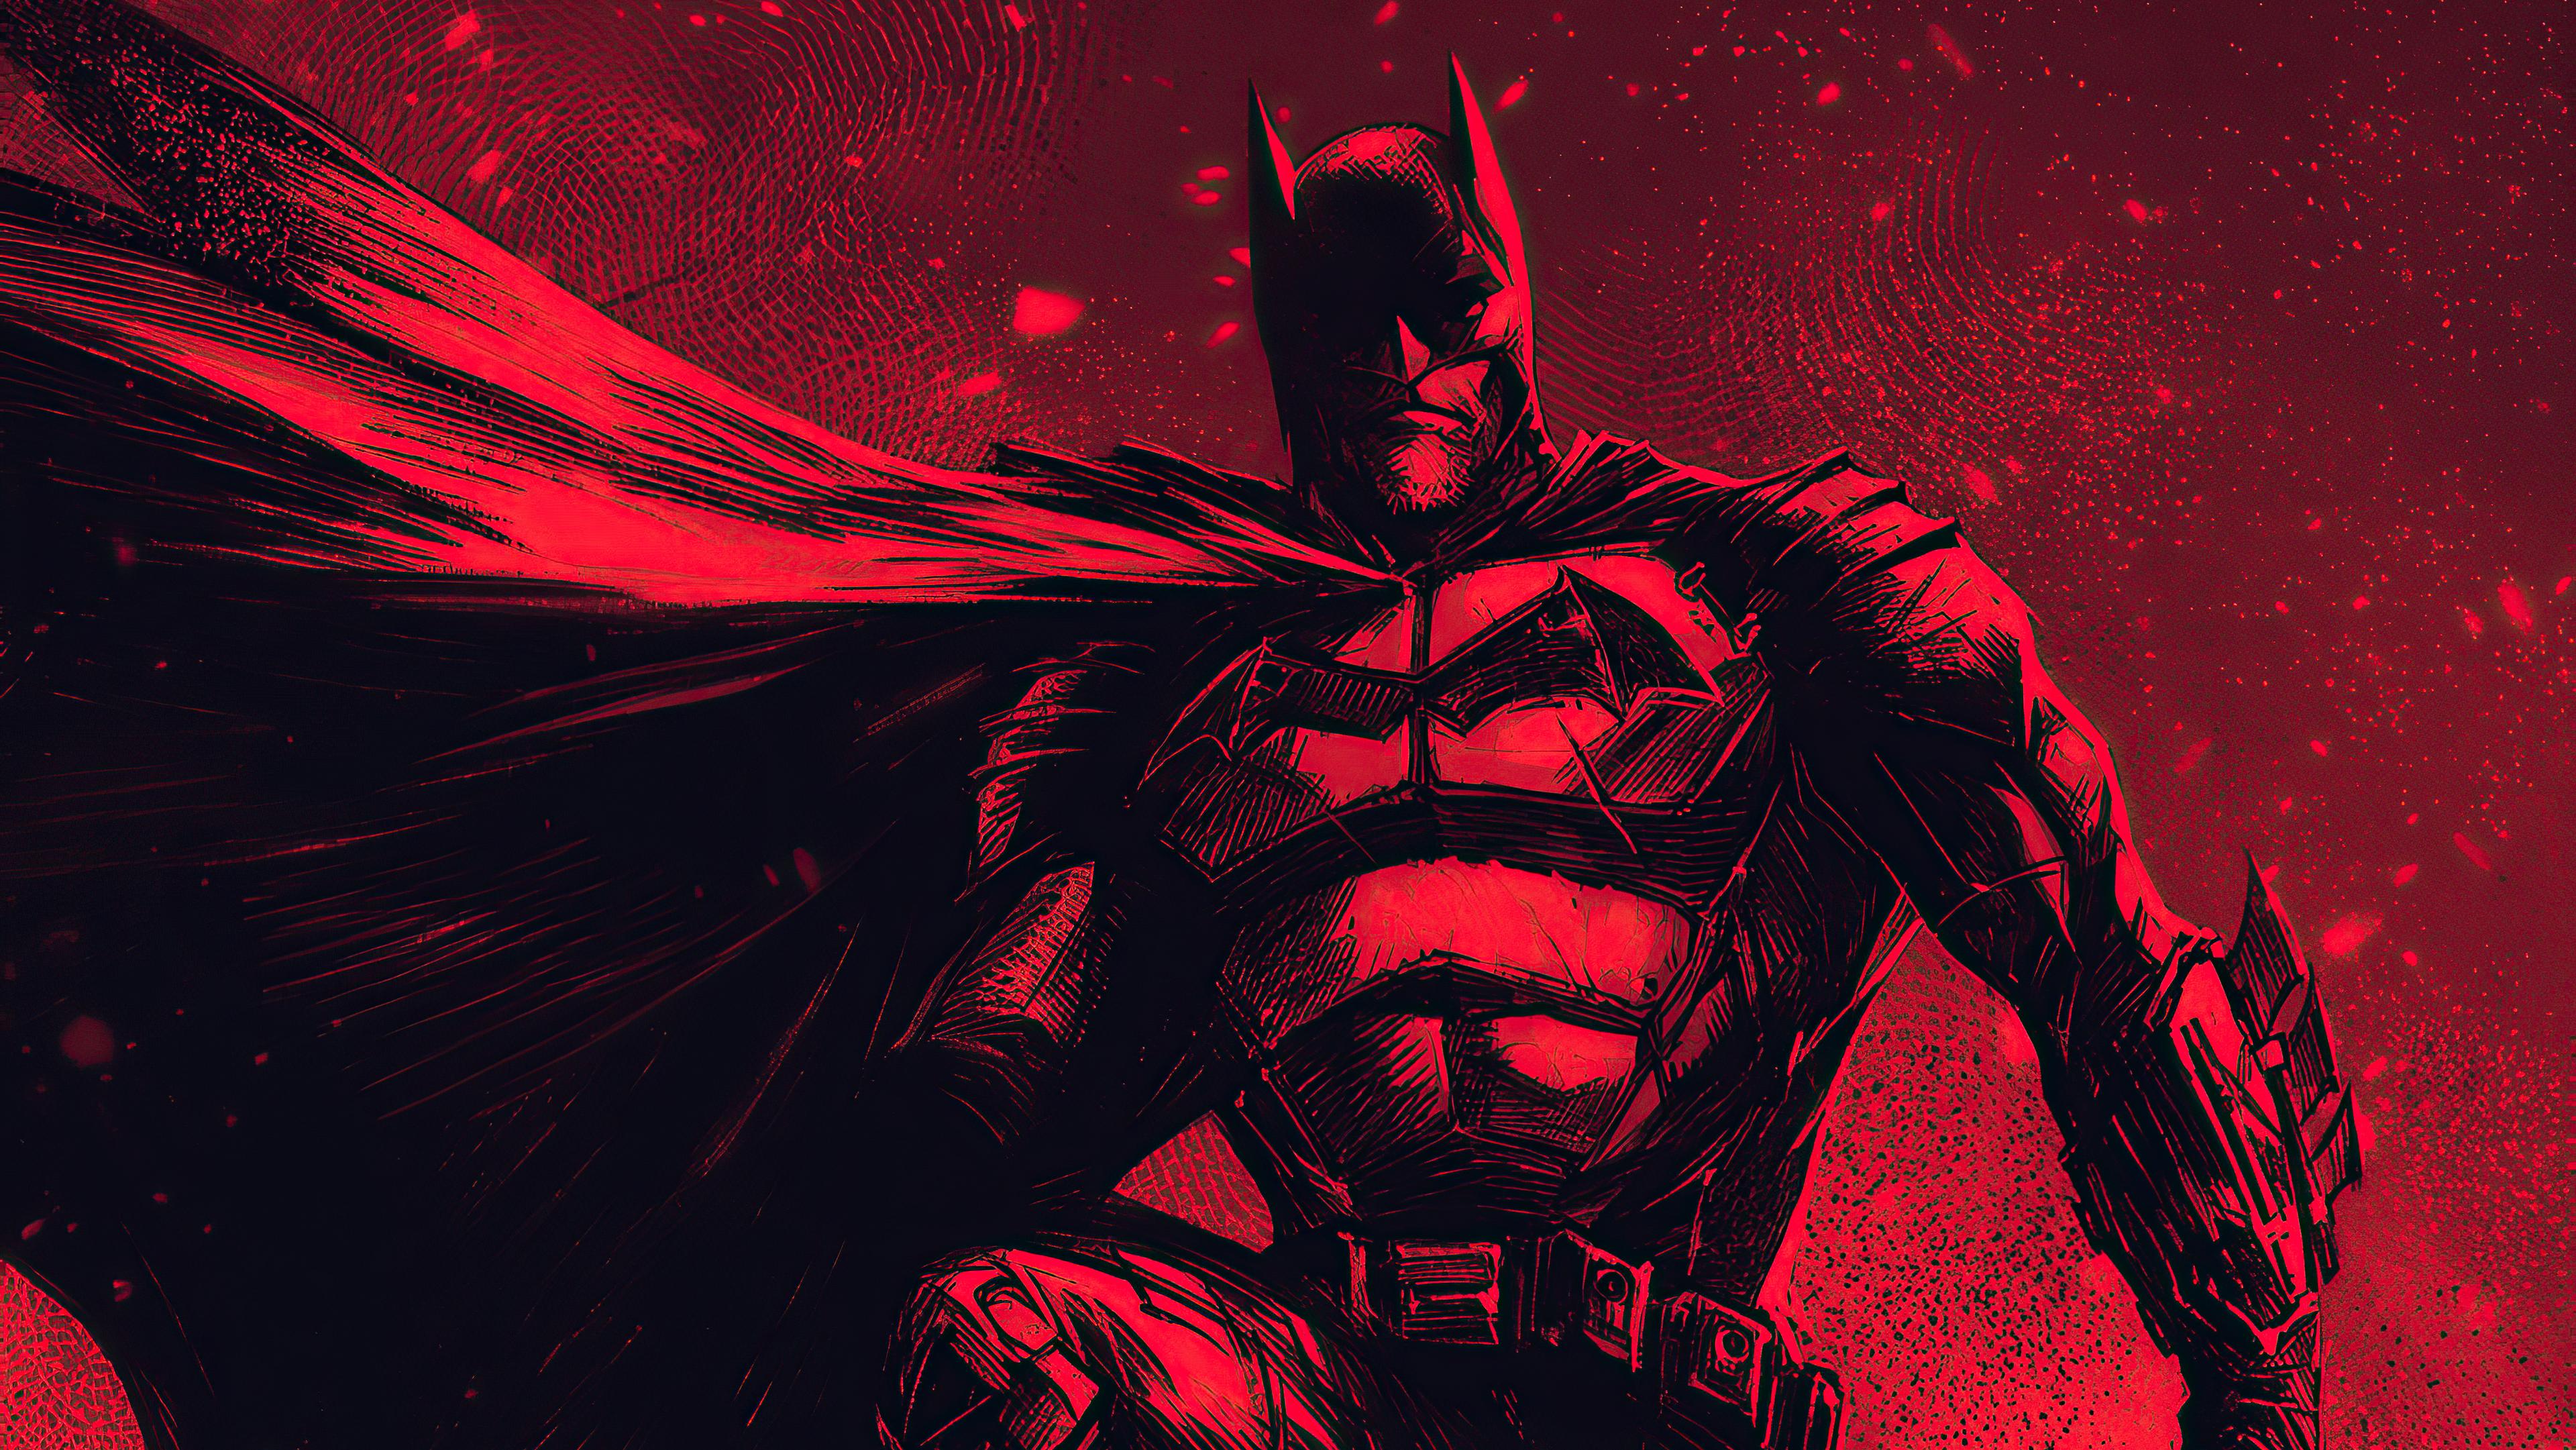 3840 x 2161 · jpeg - Batman 4k Ultra HD Wallpaper | Background Image | 3840x2161 | ID ...